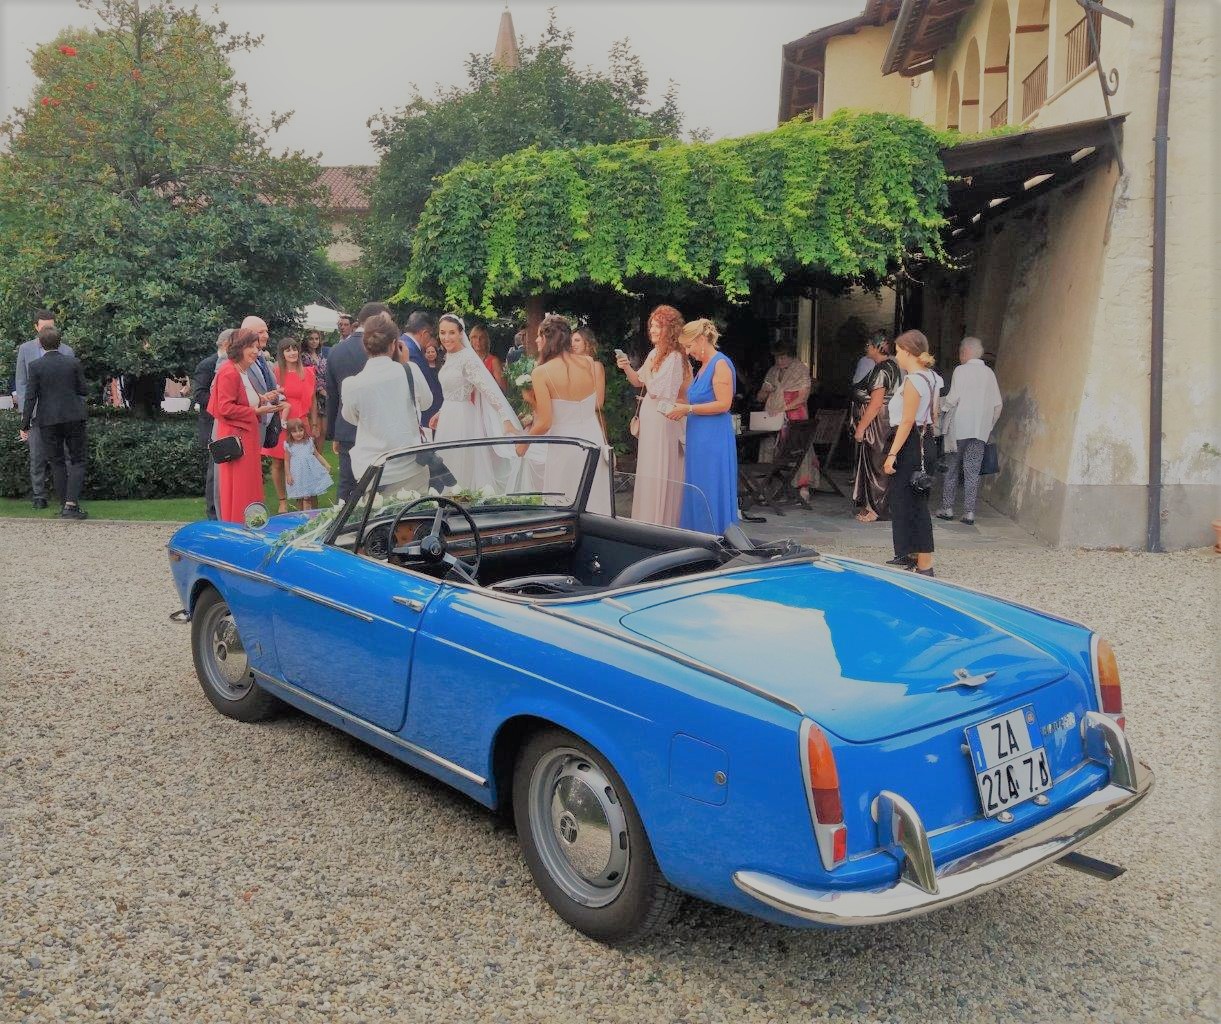 8-Pininfarina-Piemonte-cabriolet-Fiat-1500-Spider_matrimonio_cerimonia_evento_auto-depoca_classic-car_wedding_events_ceremony_classic-car-rental.jpg.jpg